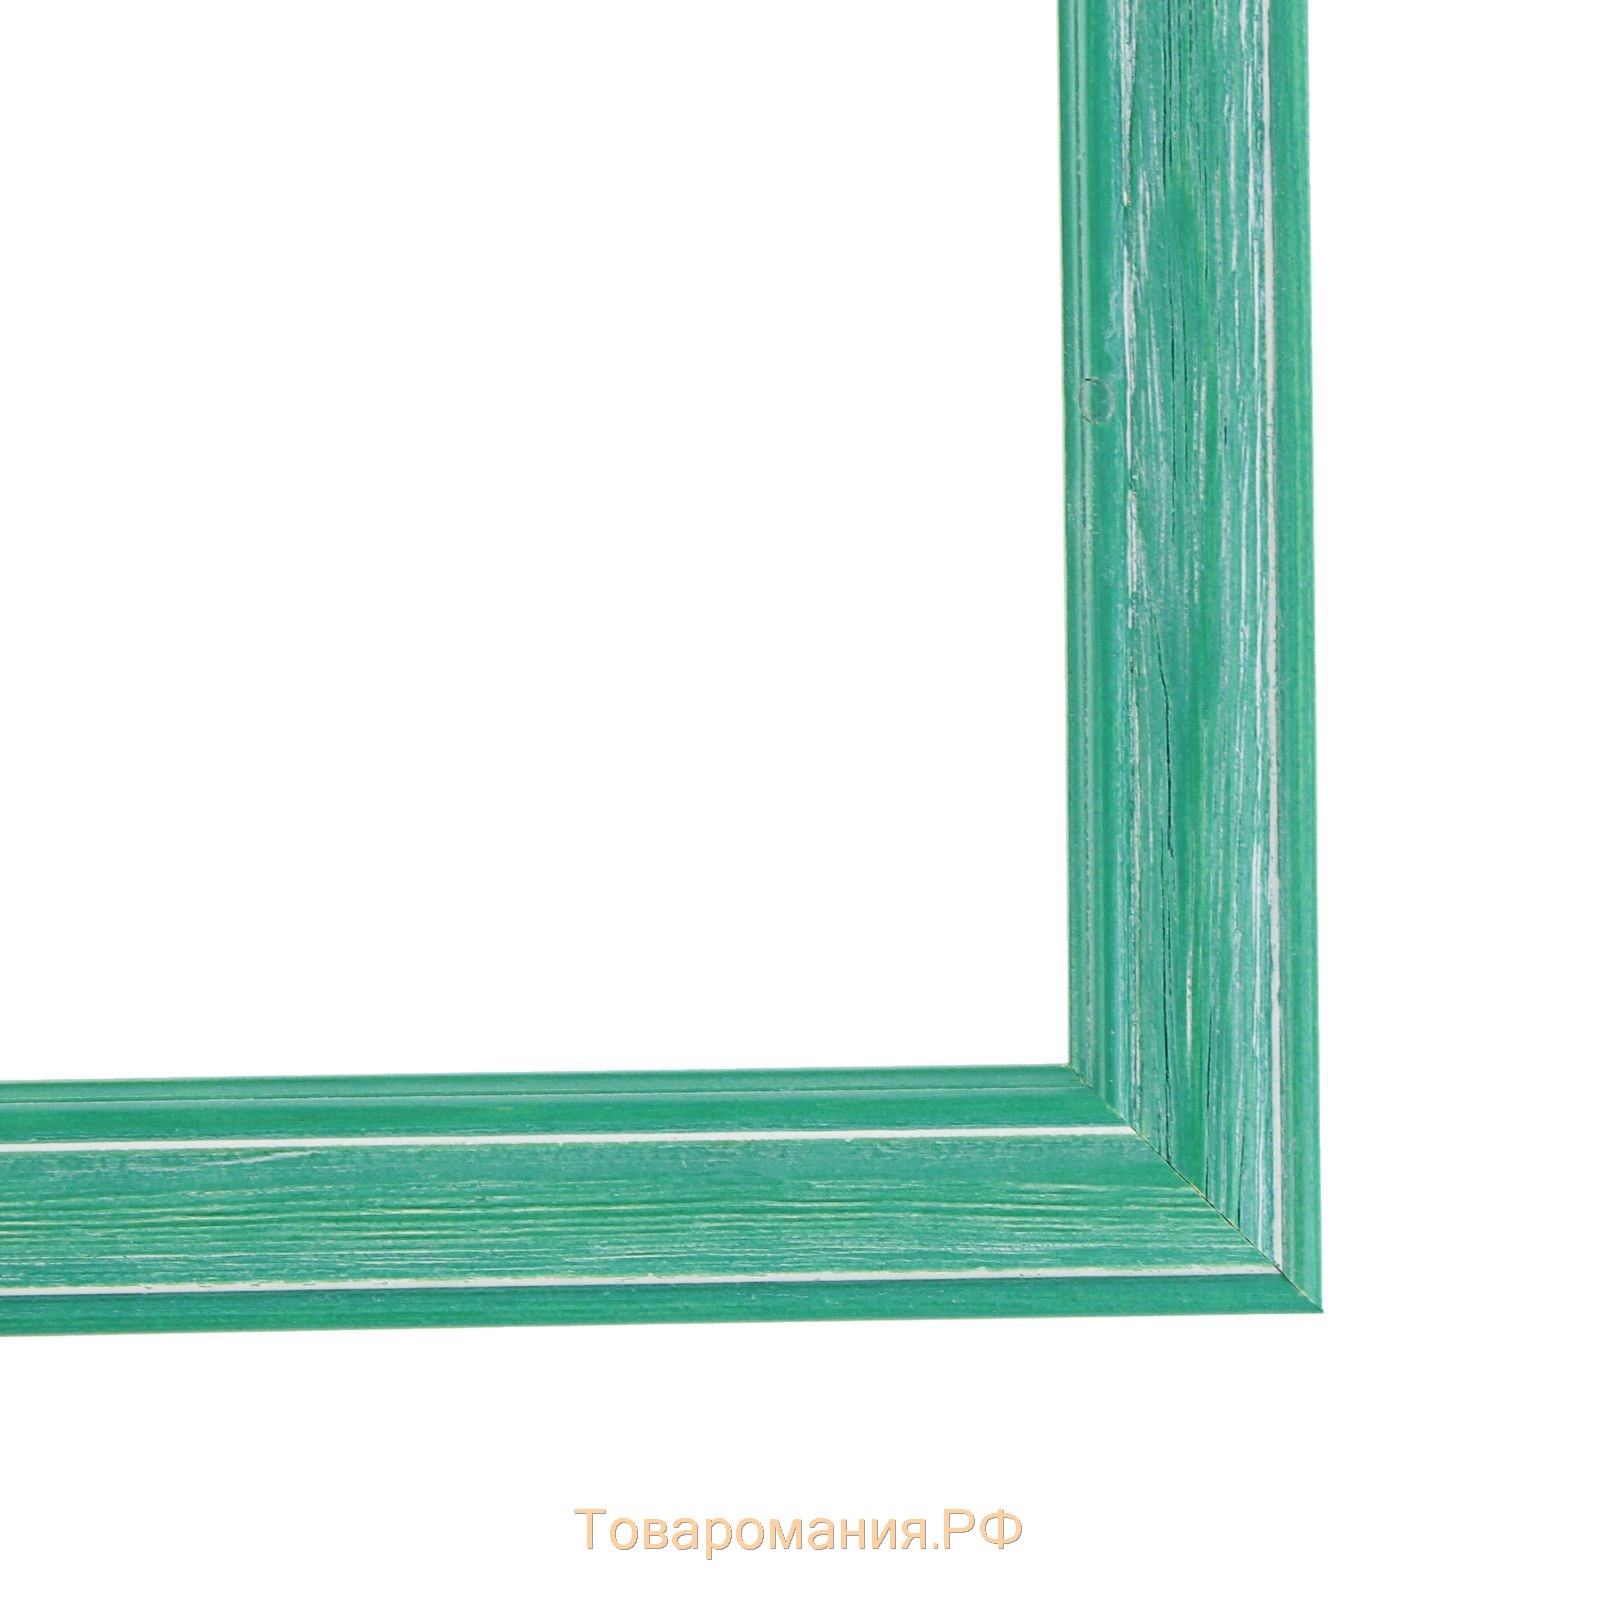 Рама для картин (зеркал) 30 х 40 х 4,2 см, дерево, Polina, зеленая